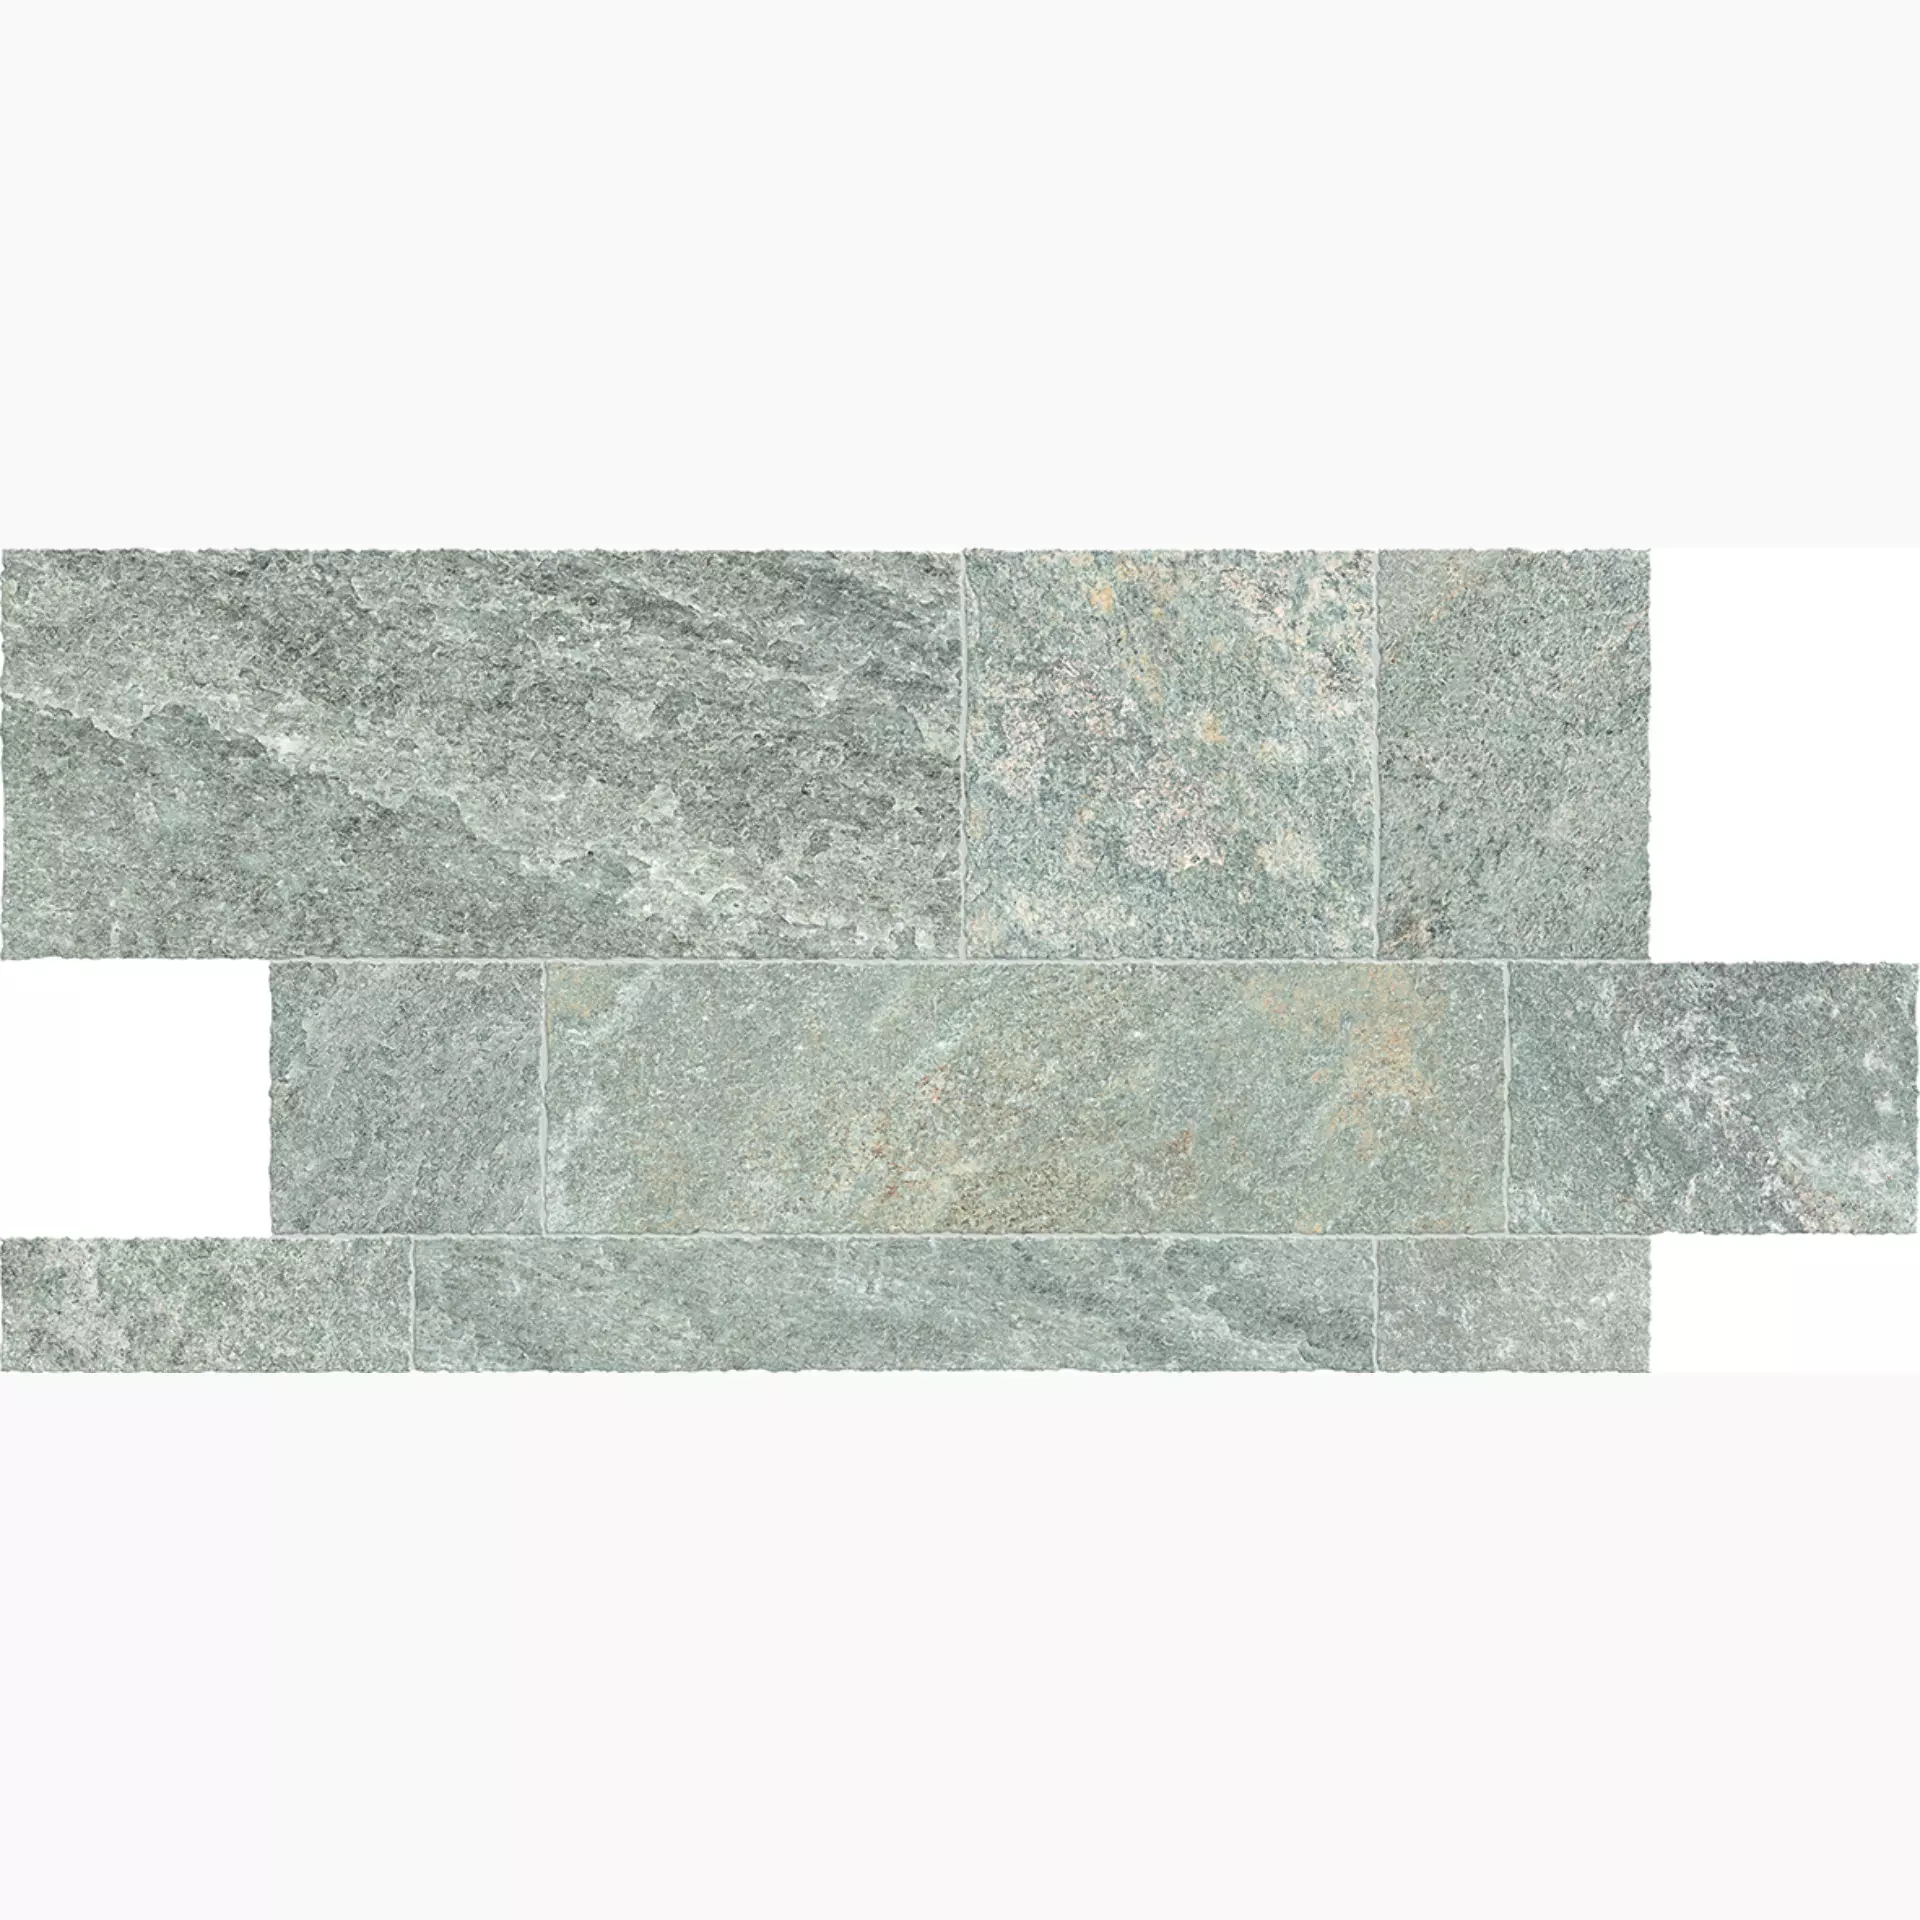 Ergon Oros Stone Grey Naturale Brecciato Multi Prestige EL9R 0,1x0,1cm 9,5mm